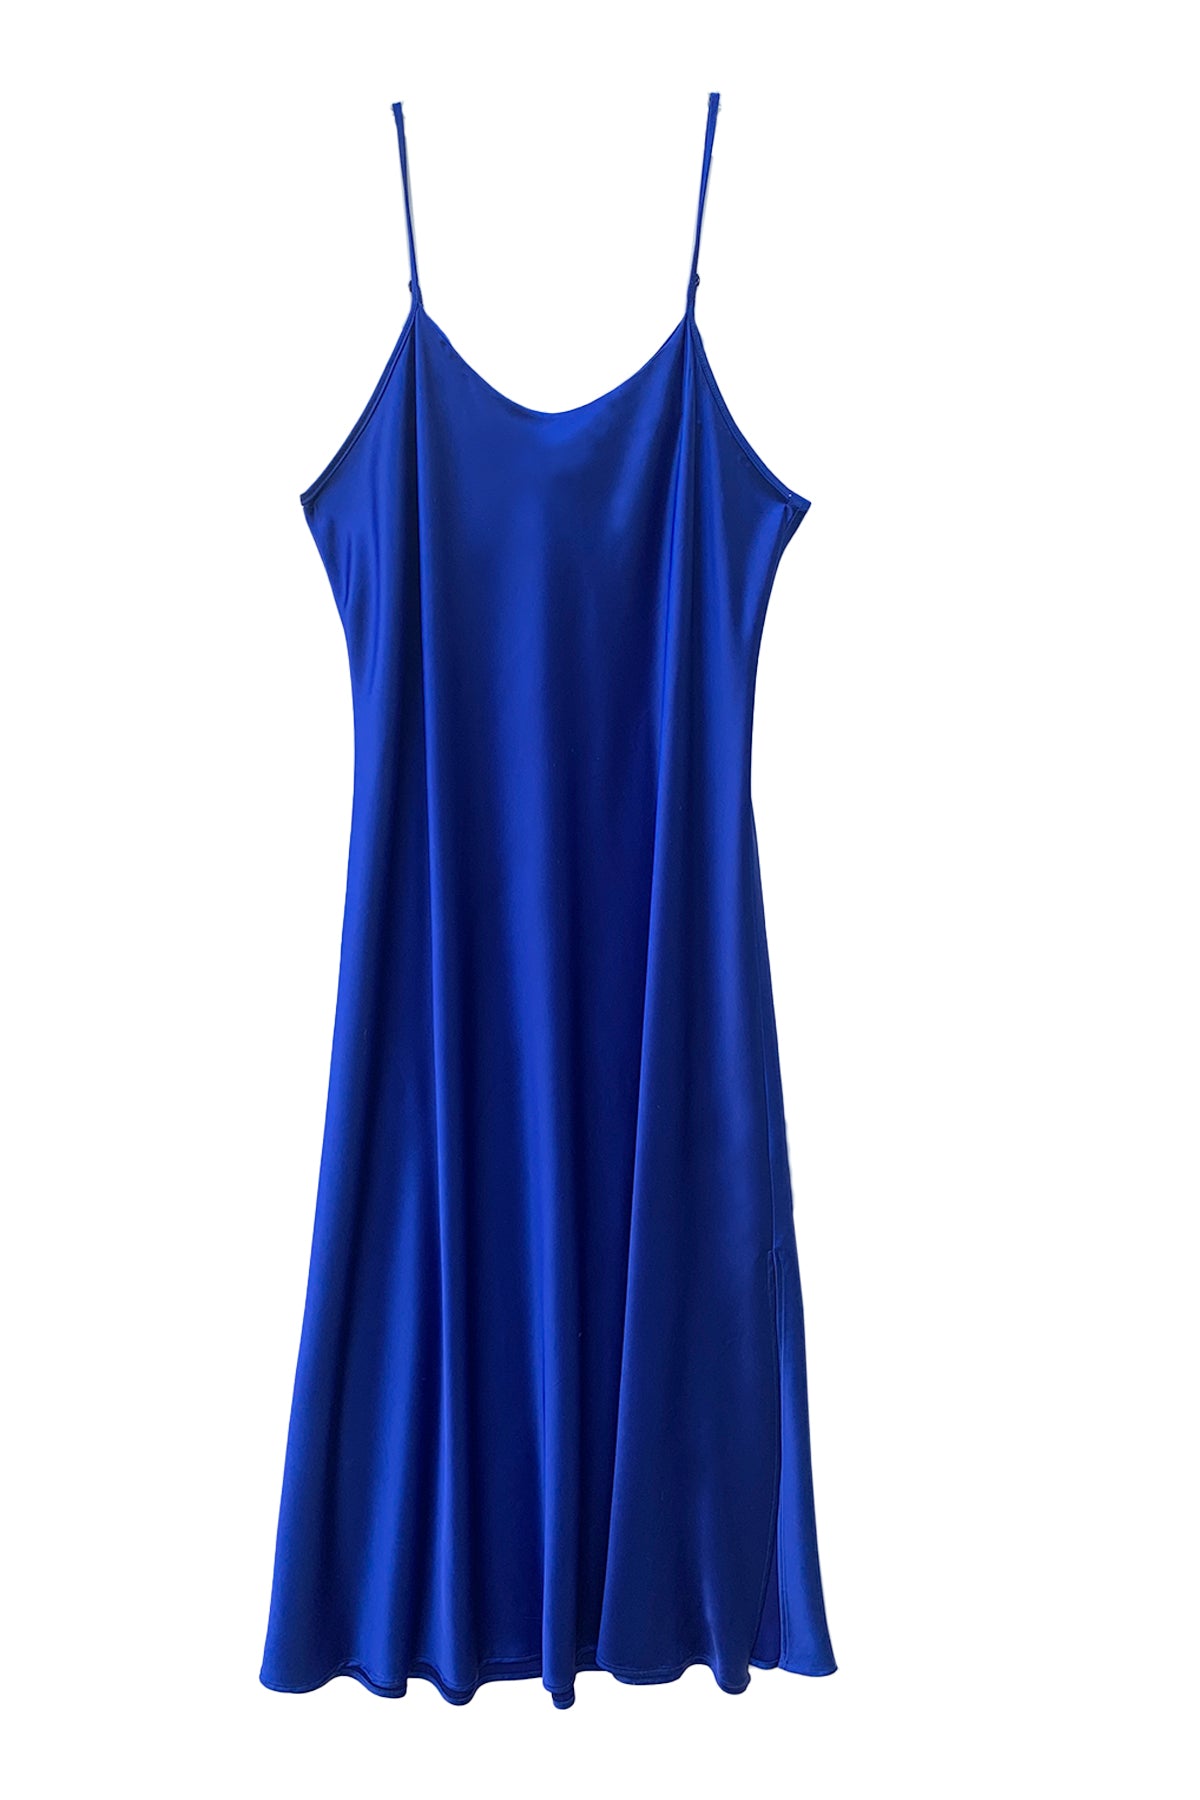 flat of leah dress in cobalt